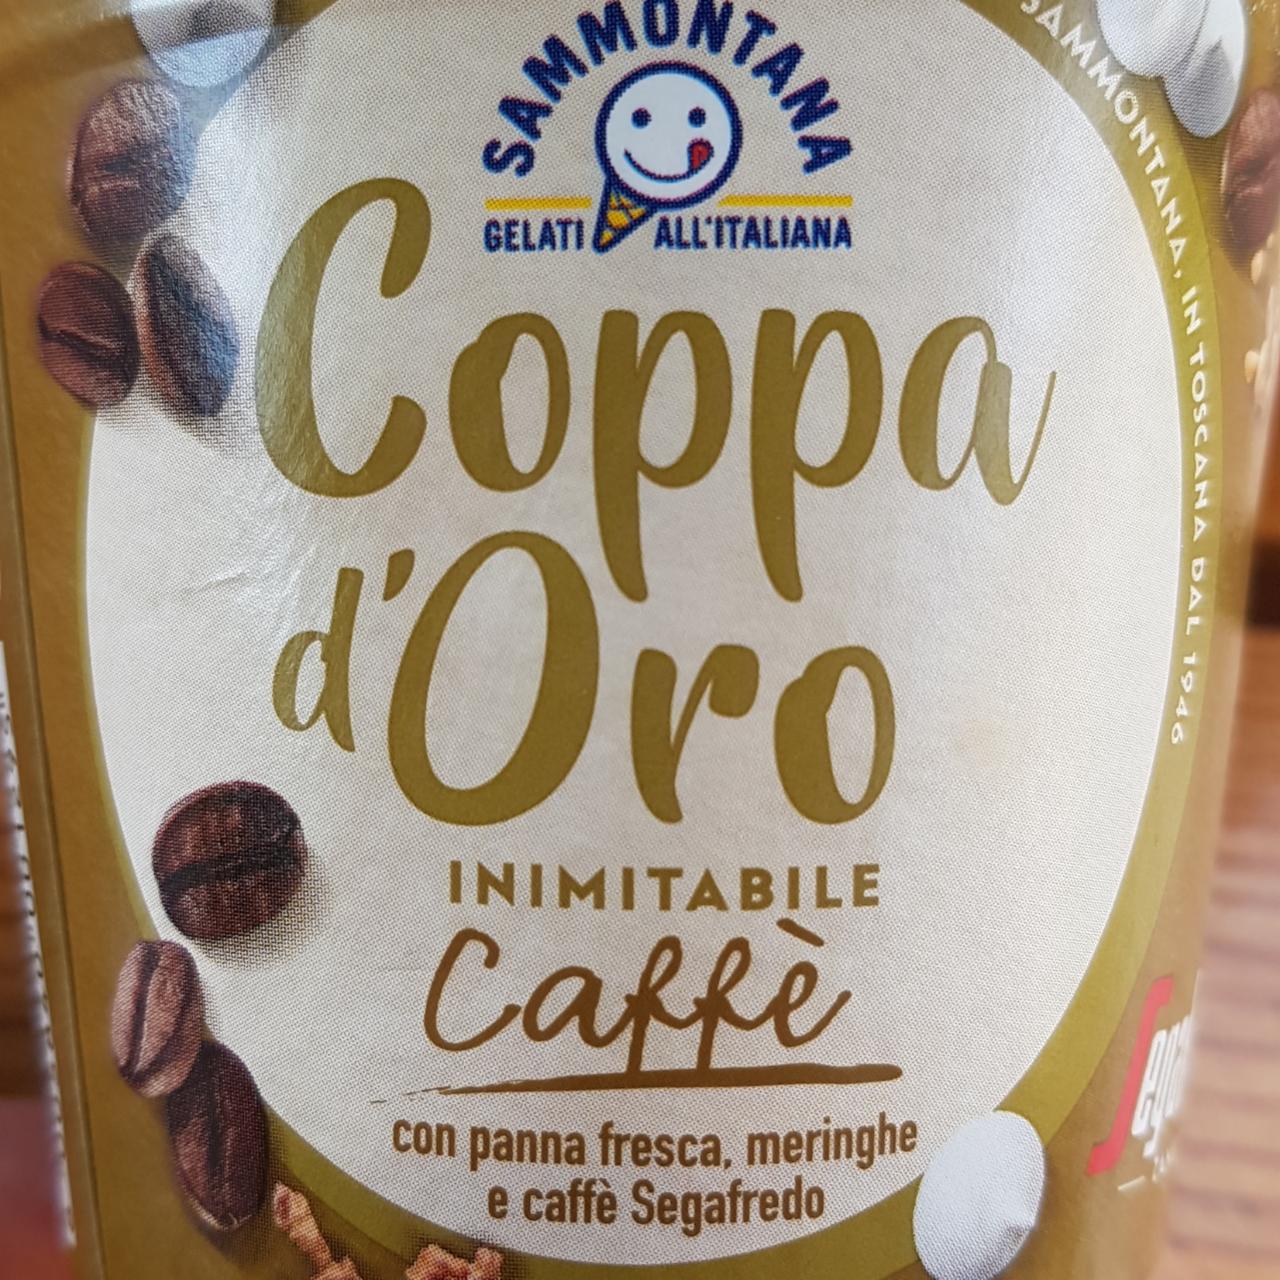 Fotografie - Coppa d'Oro Caffé con panna fresca, meringhe e caffé Segafredo Sammontana